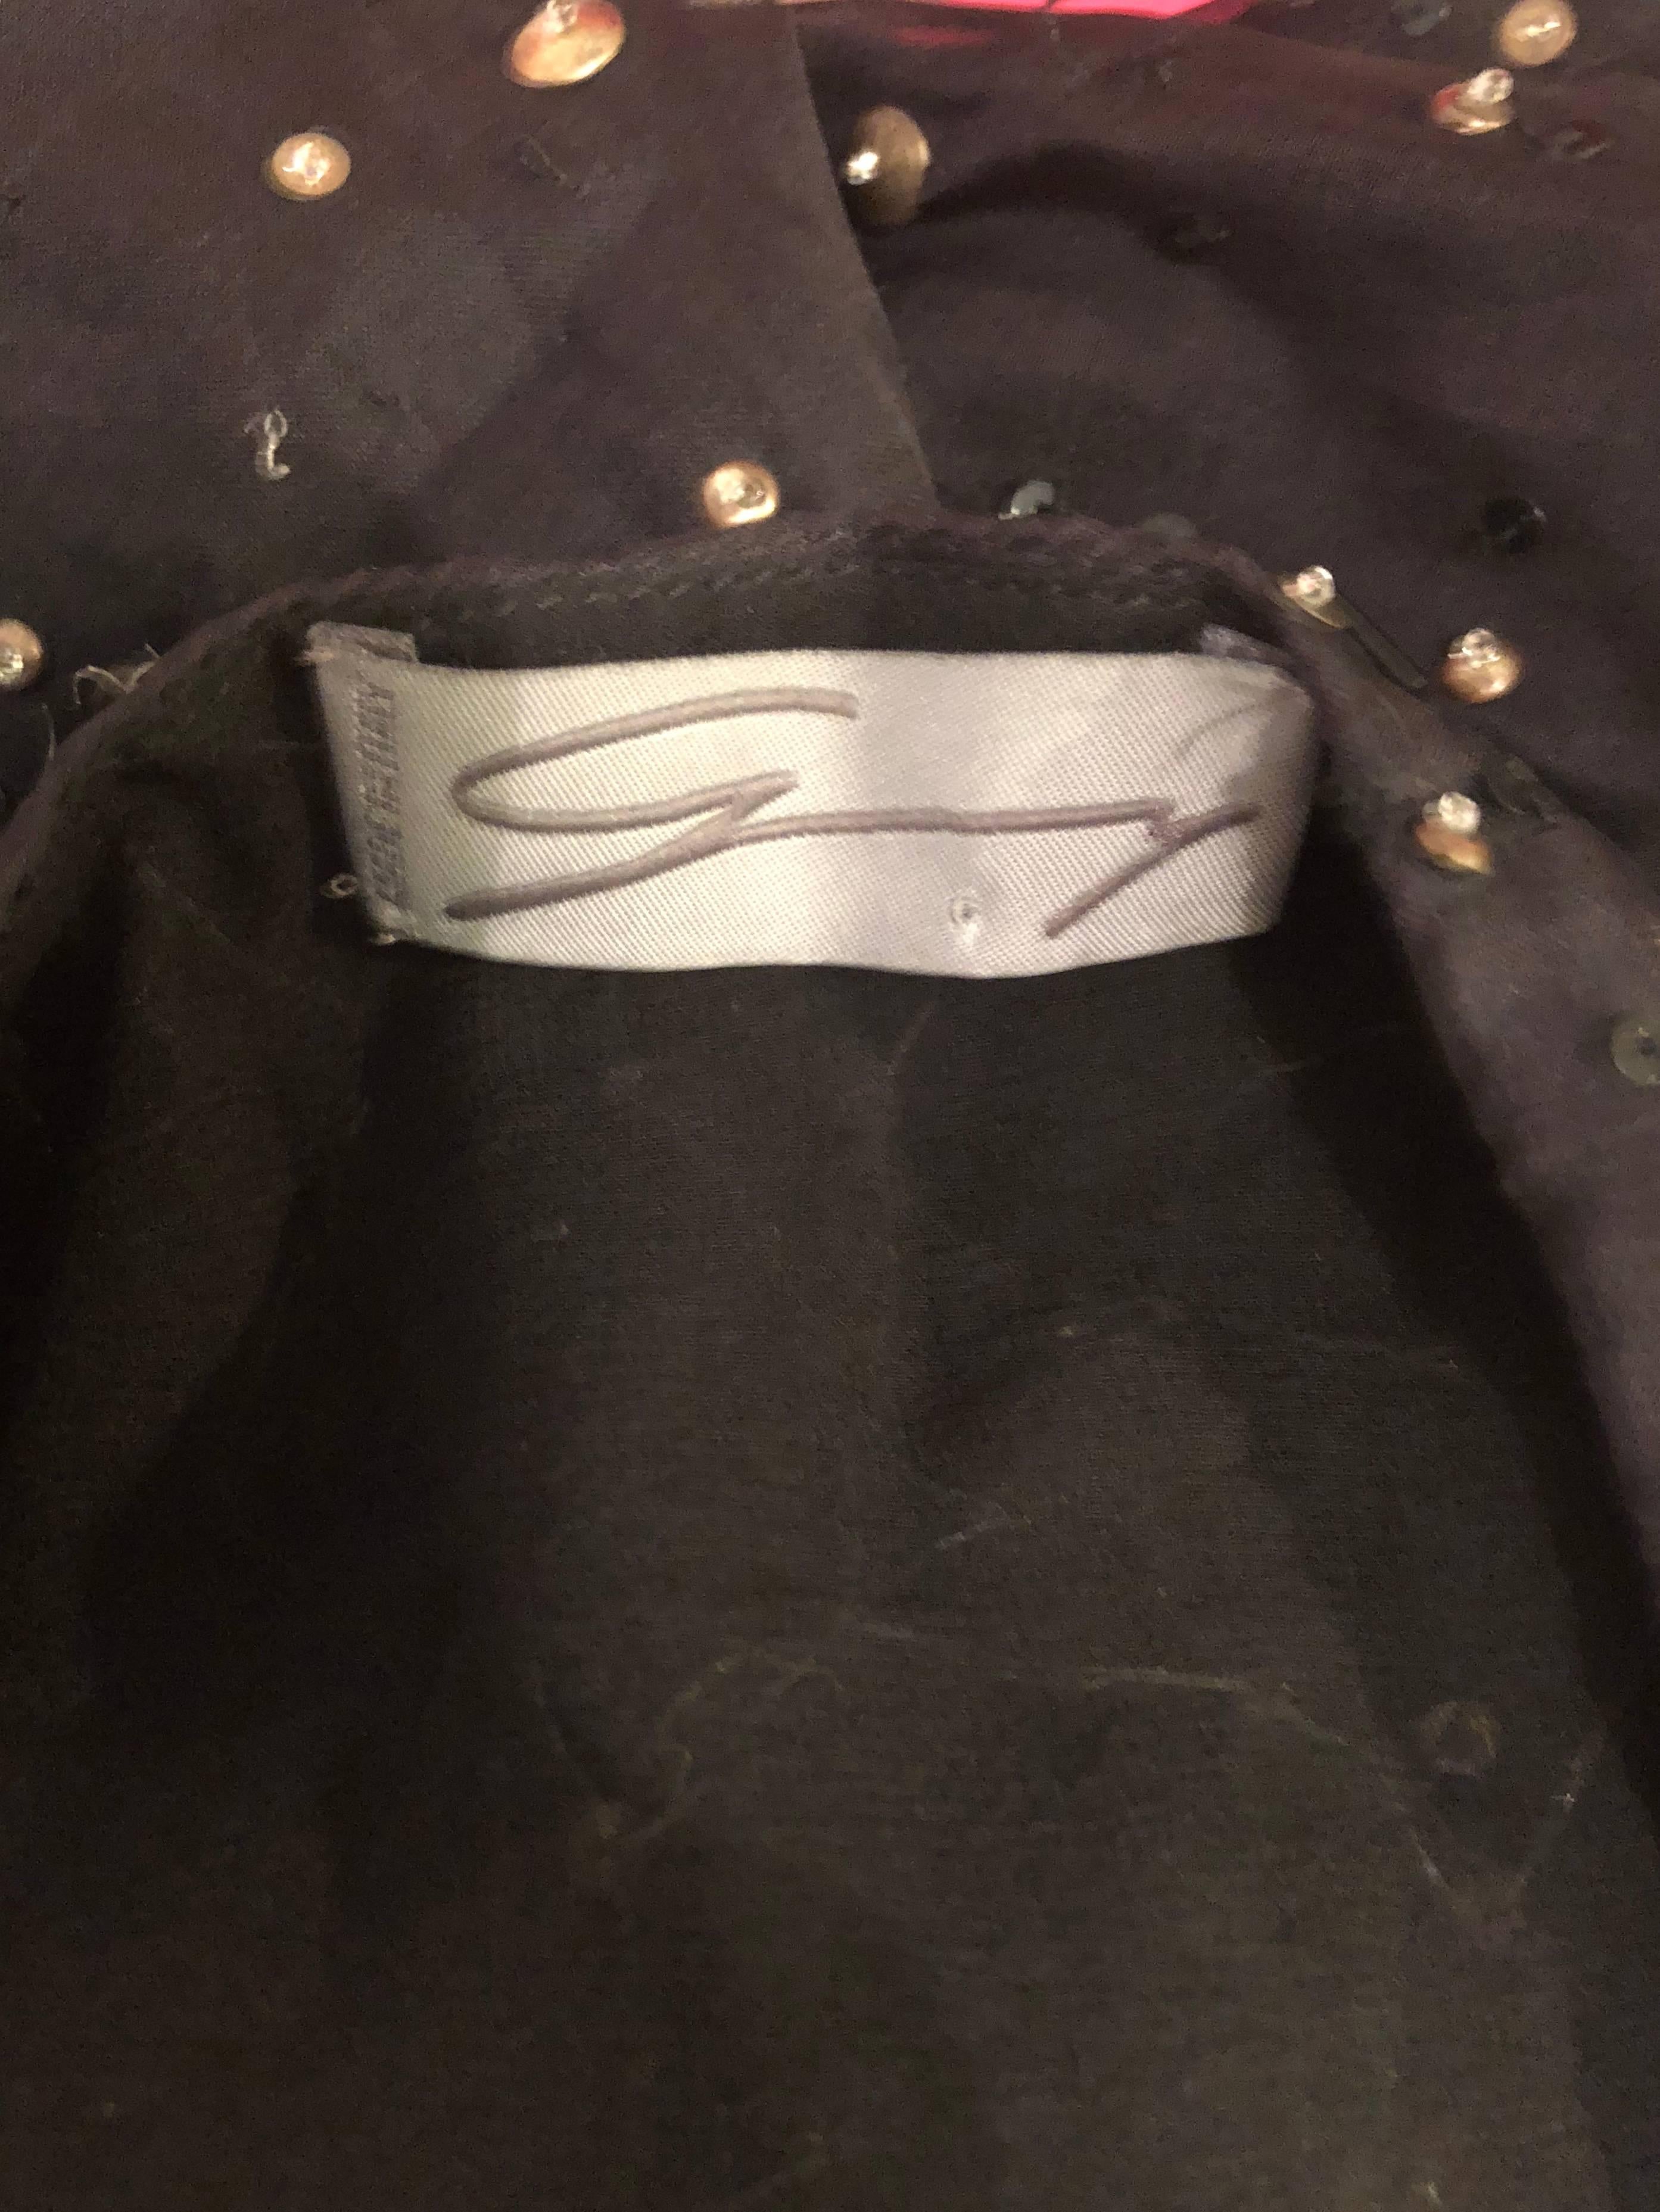 Magnifique blouse GENNY, by GIANNI VERSACE des années 90 en mousseline de soie noire semi-transparente perlée ! Il comporte des centaines de perles noires cousues à la main et des paillettes dorées. Fermeture éclair cachée sur le côté avec fermeture